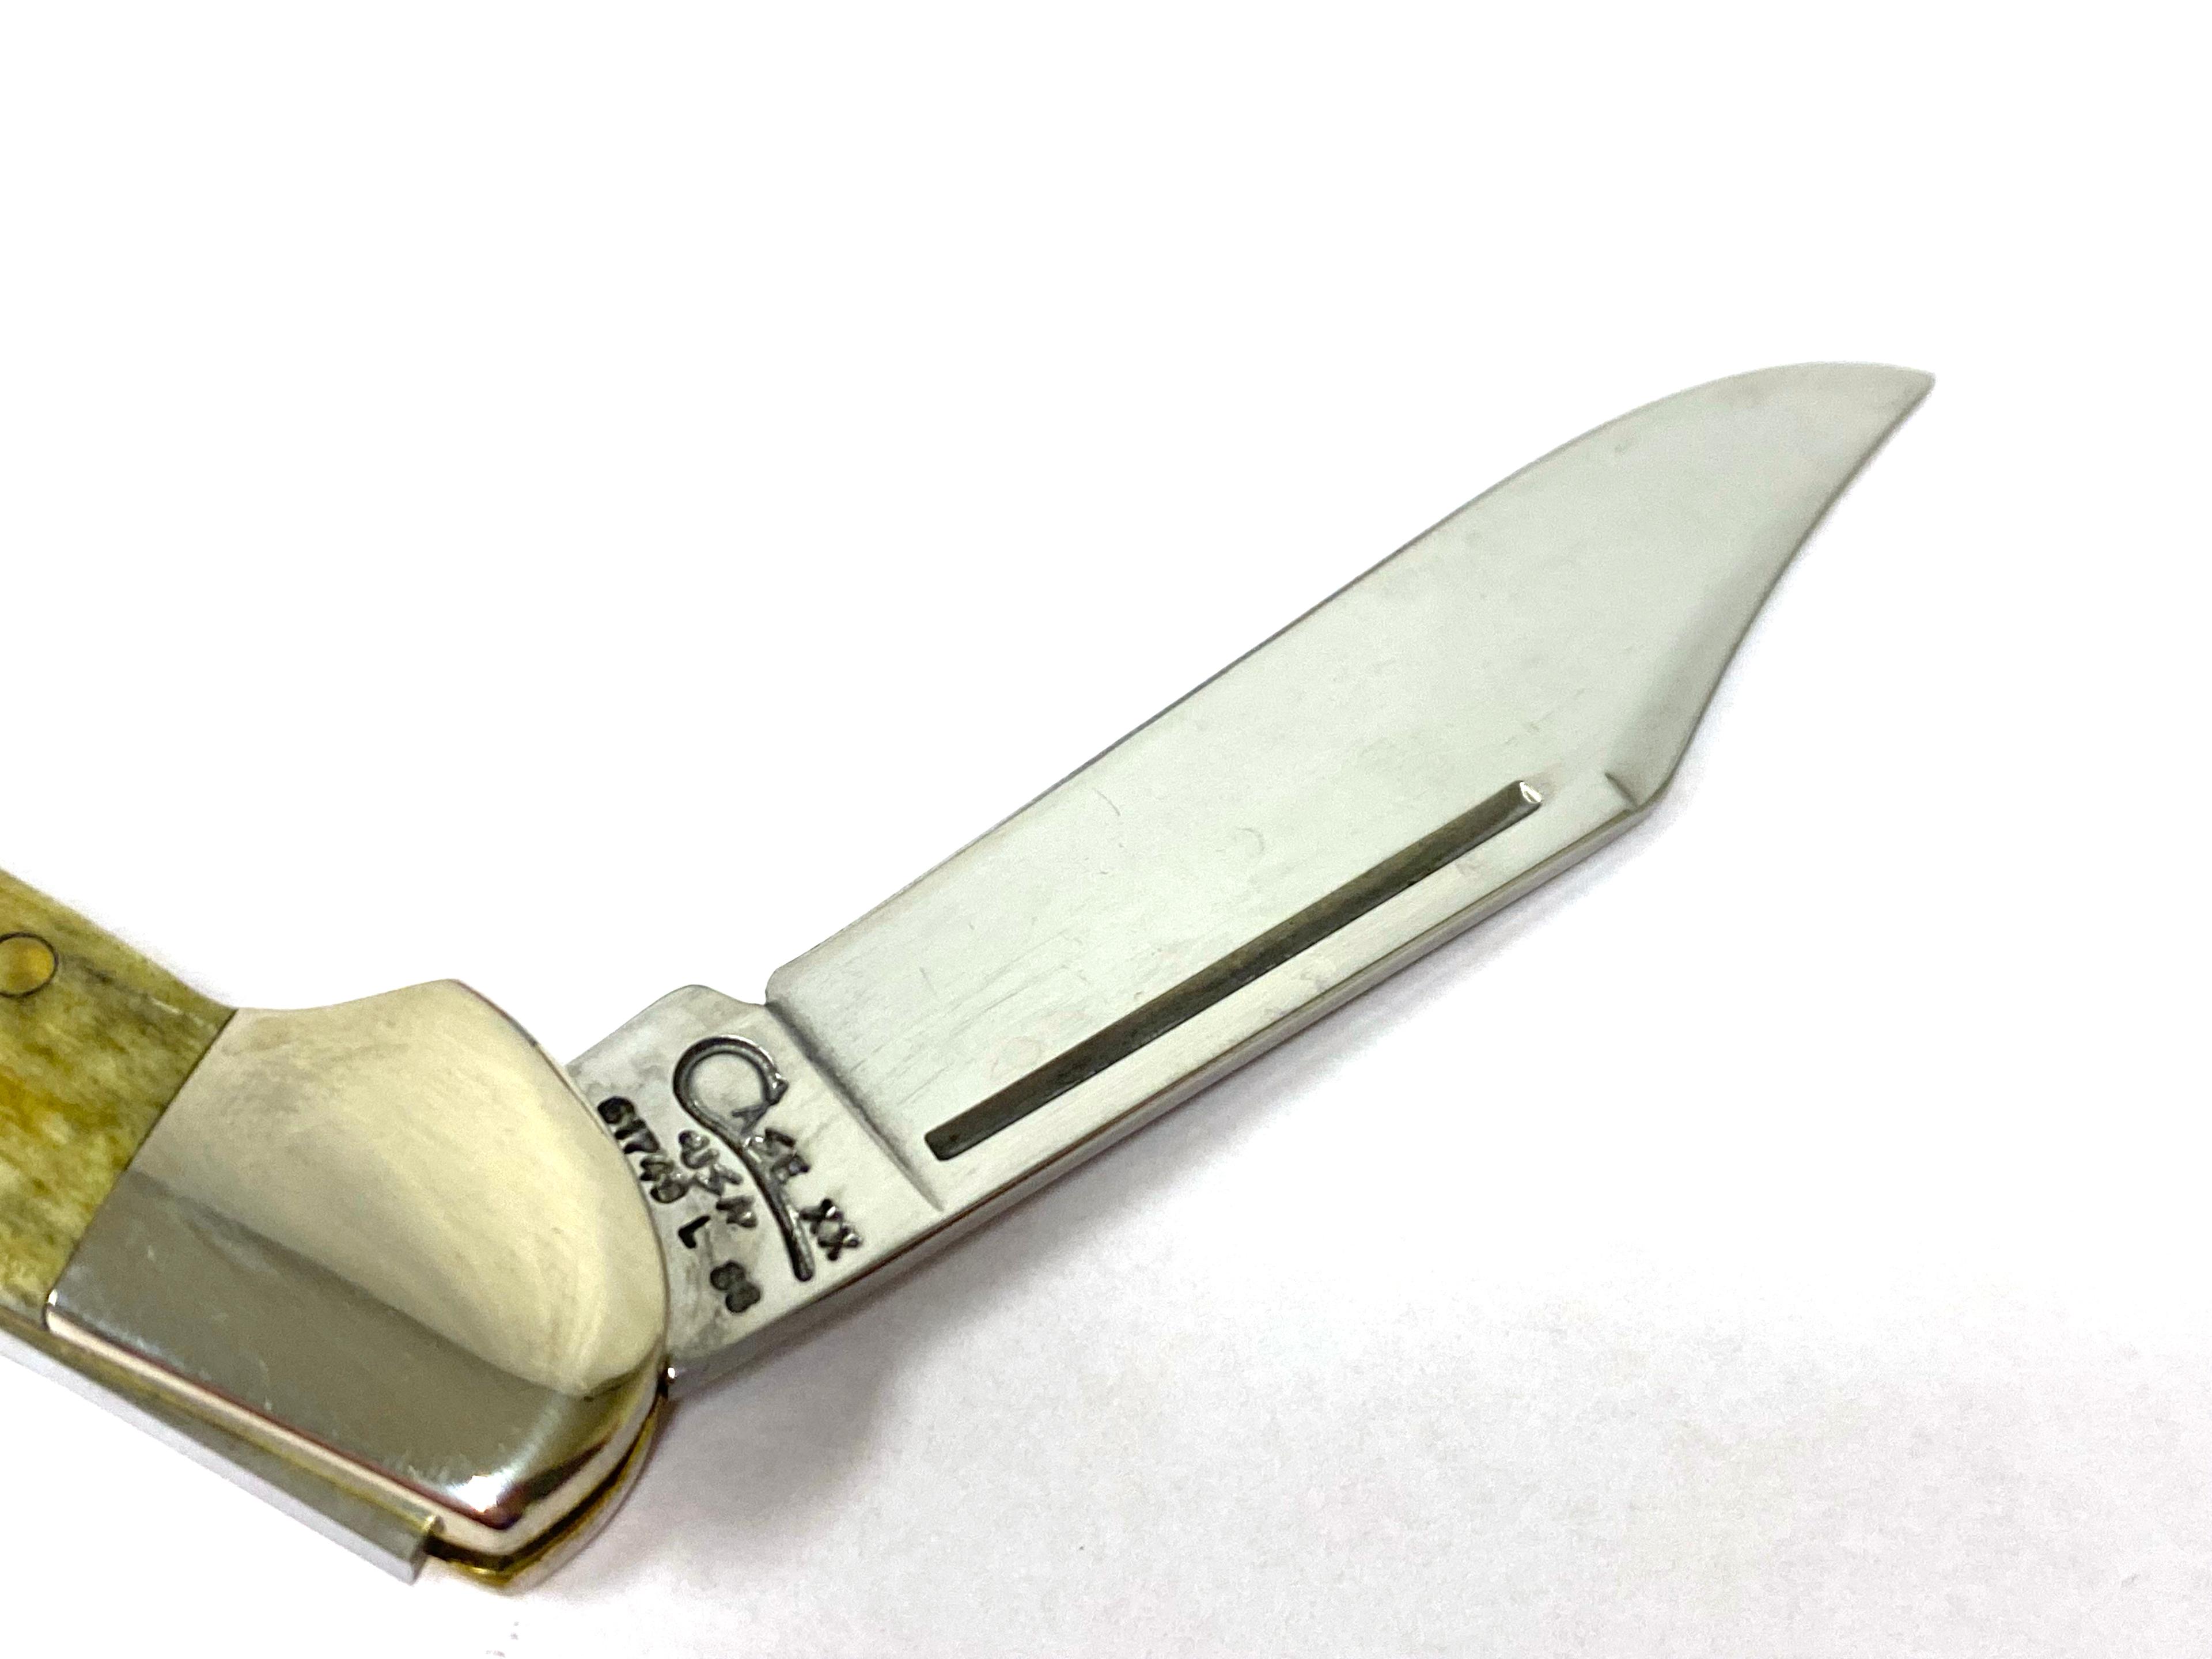 NIB Case XX Pocket Worn Mini Copperlock 61749L SS Pocket Knife in box